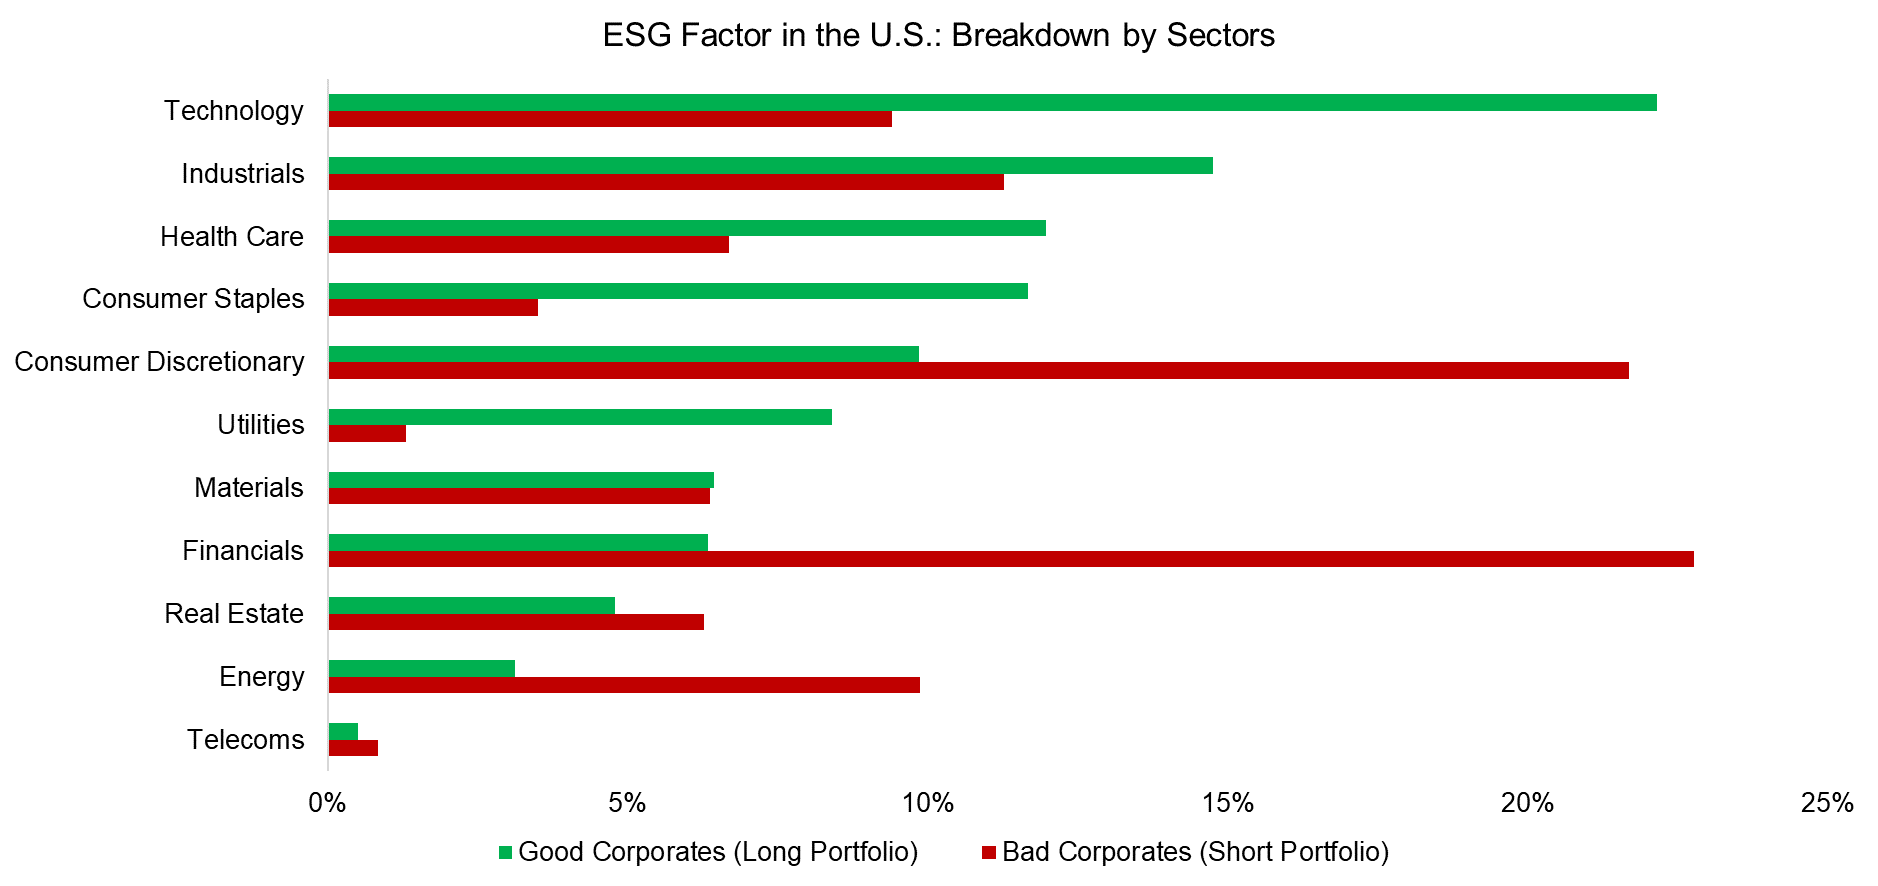 ESG Factor in the U.S. Breakdown by Sectors